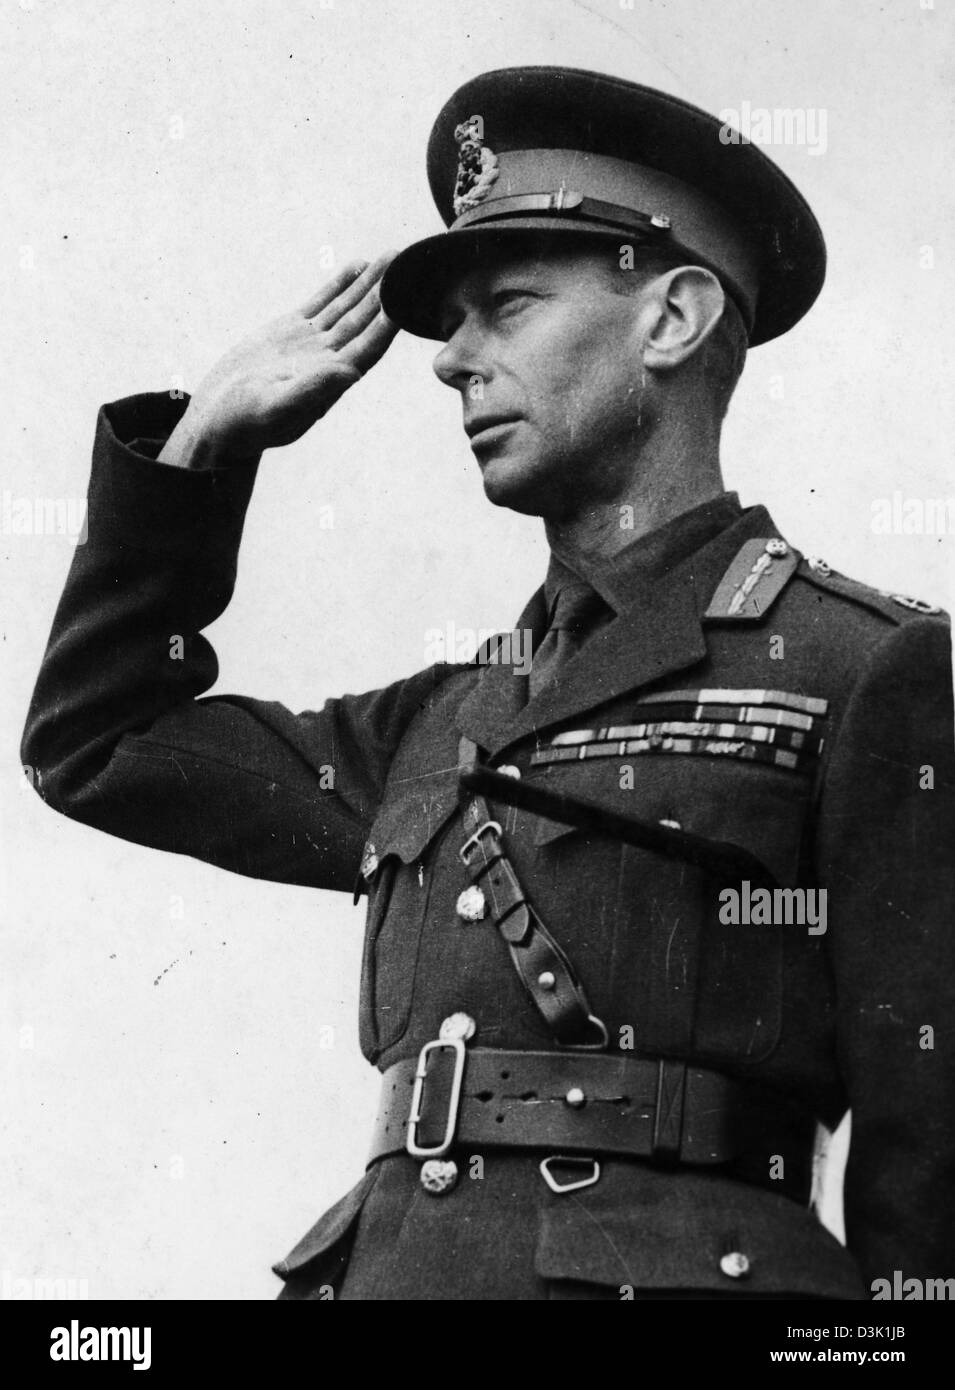 El rey George VI en uniforme del ejército durante WW2 Foto de stock